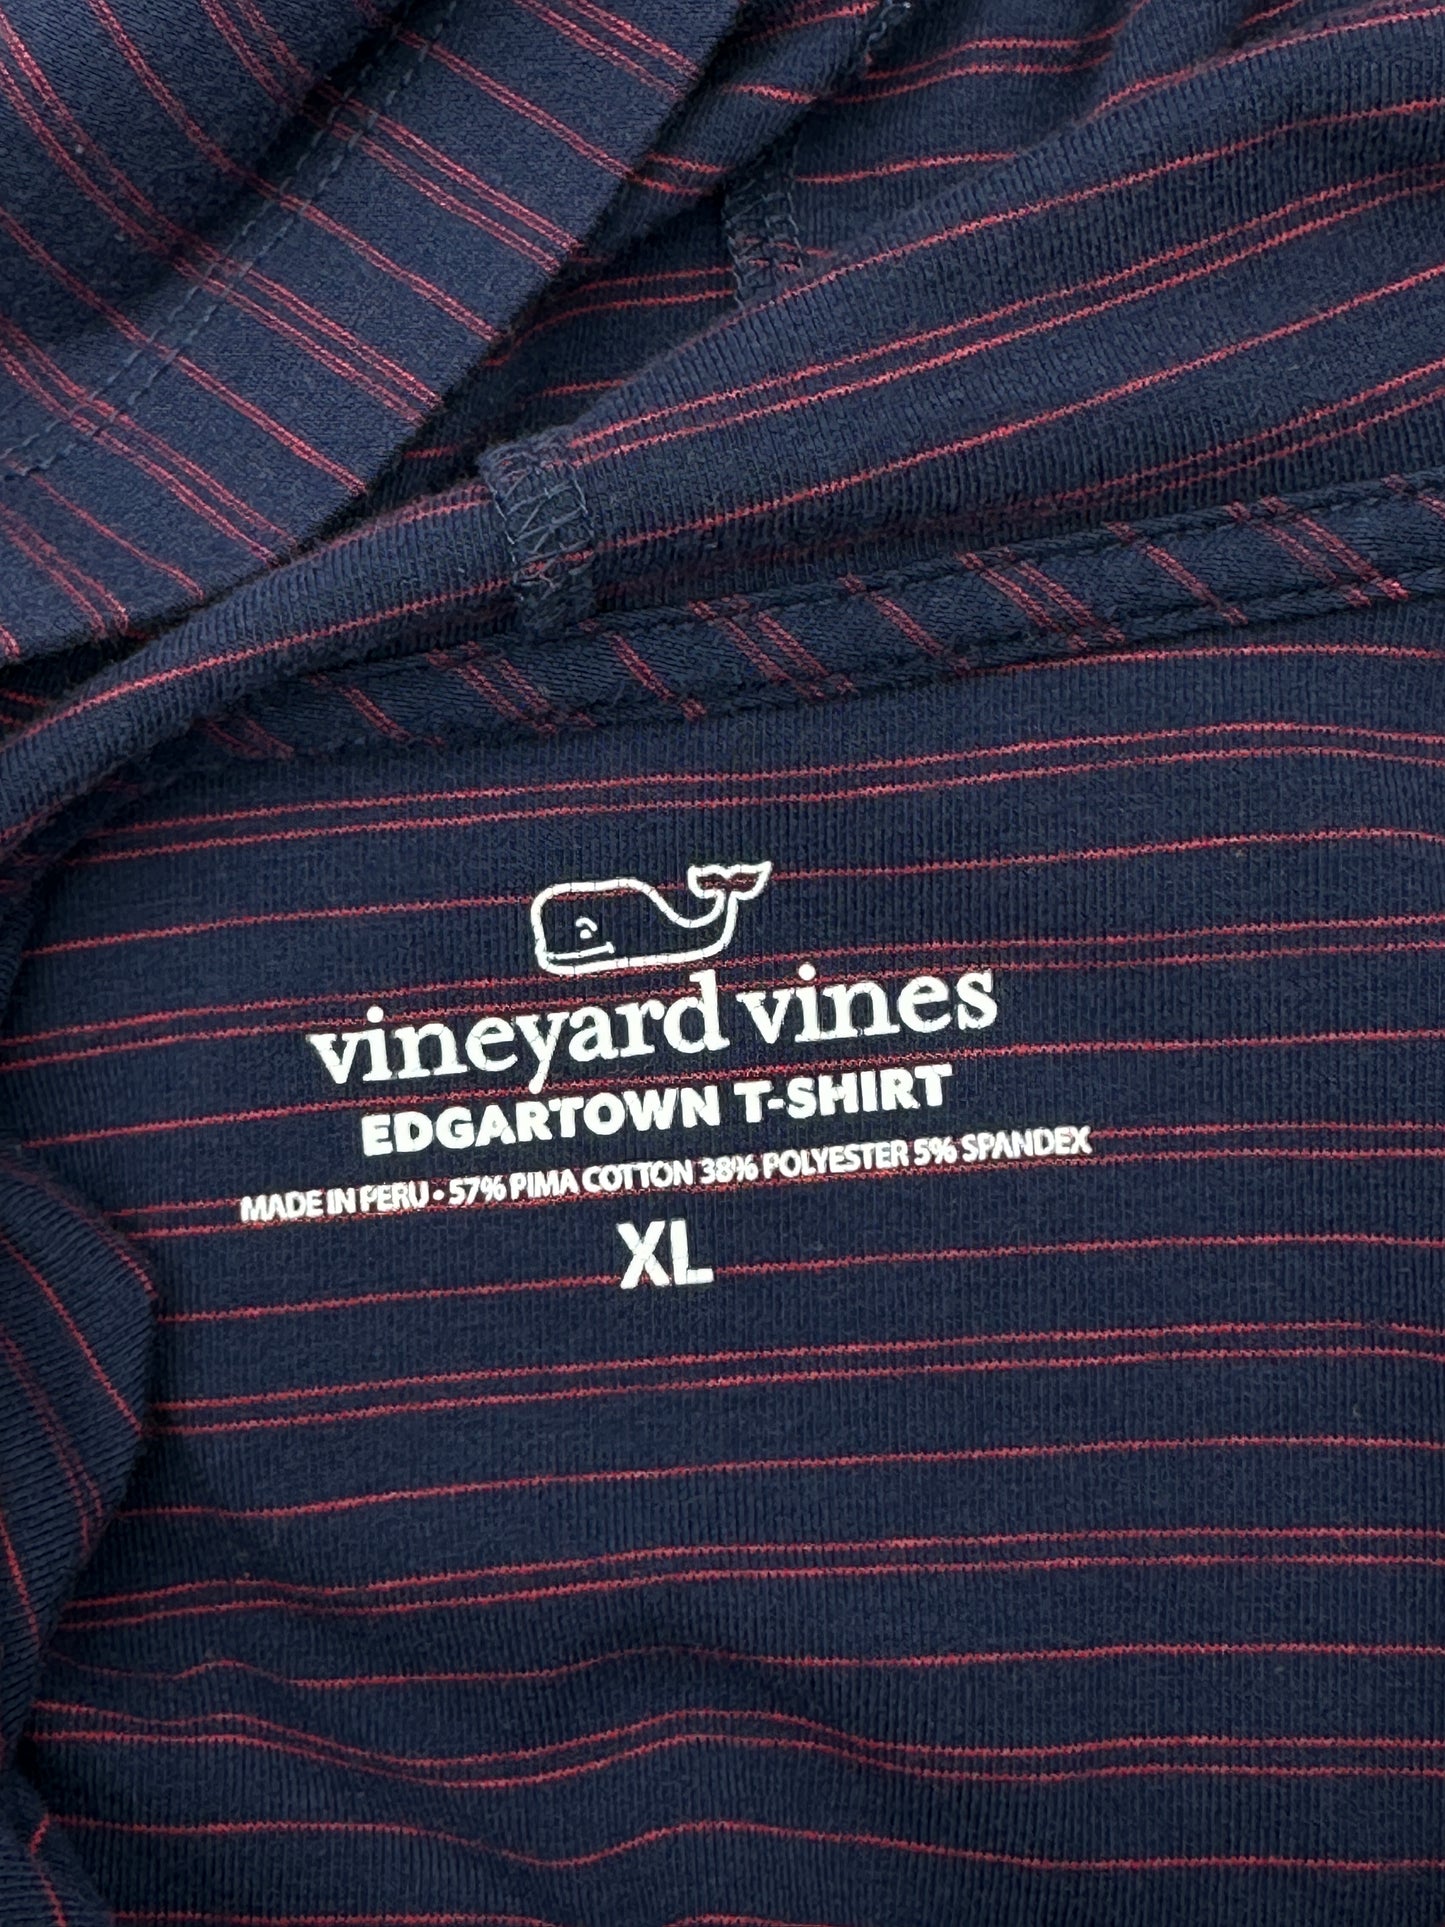 Vineyard Vines Men's Size XL Navy Blue with Red Stripes Edgartown Long-Sleeve Hoodie Tee